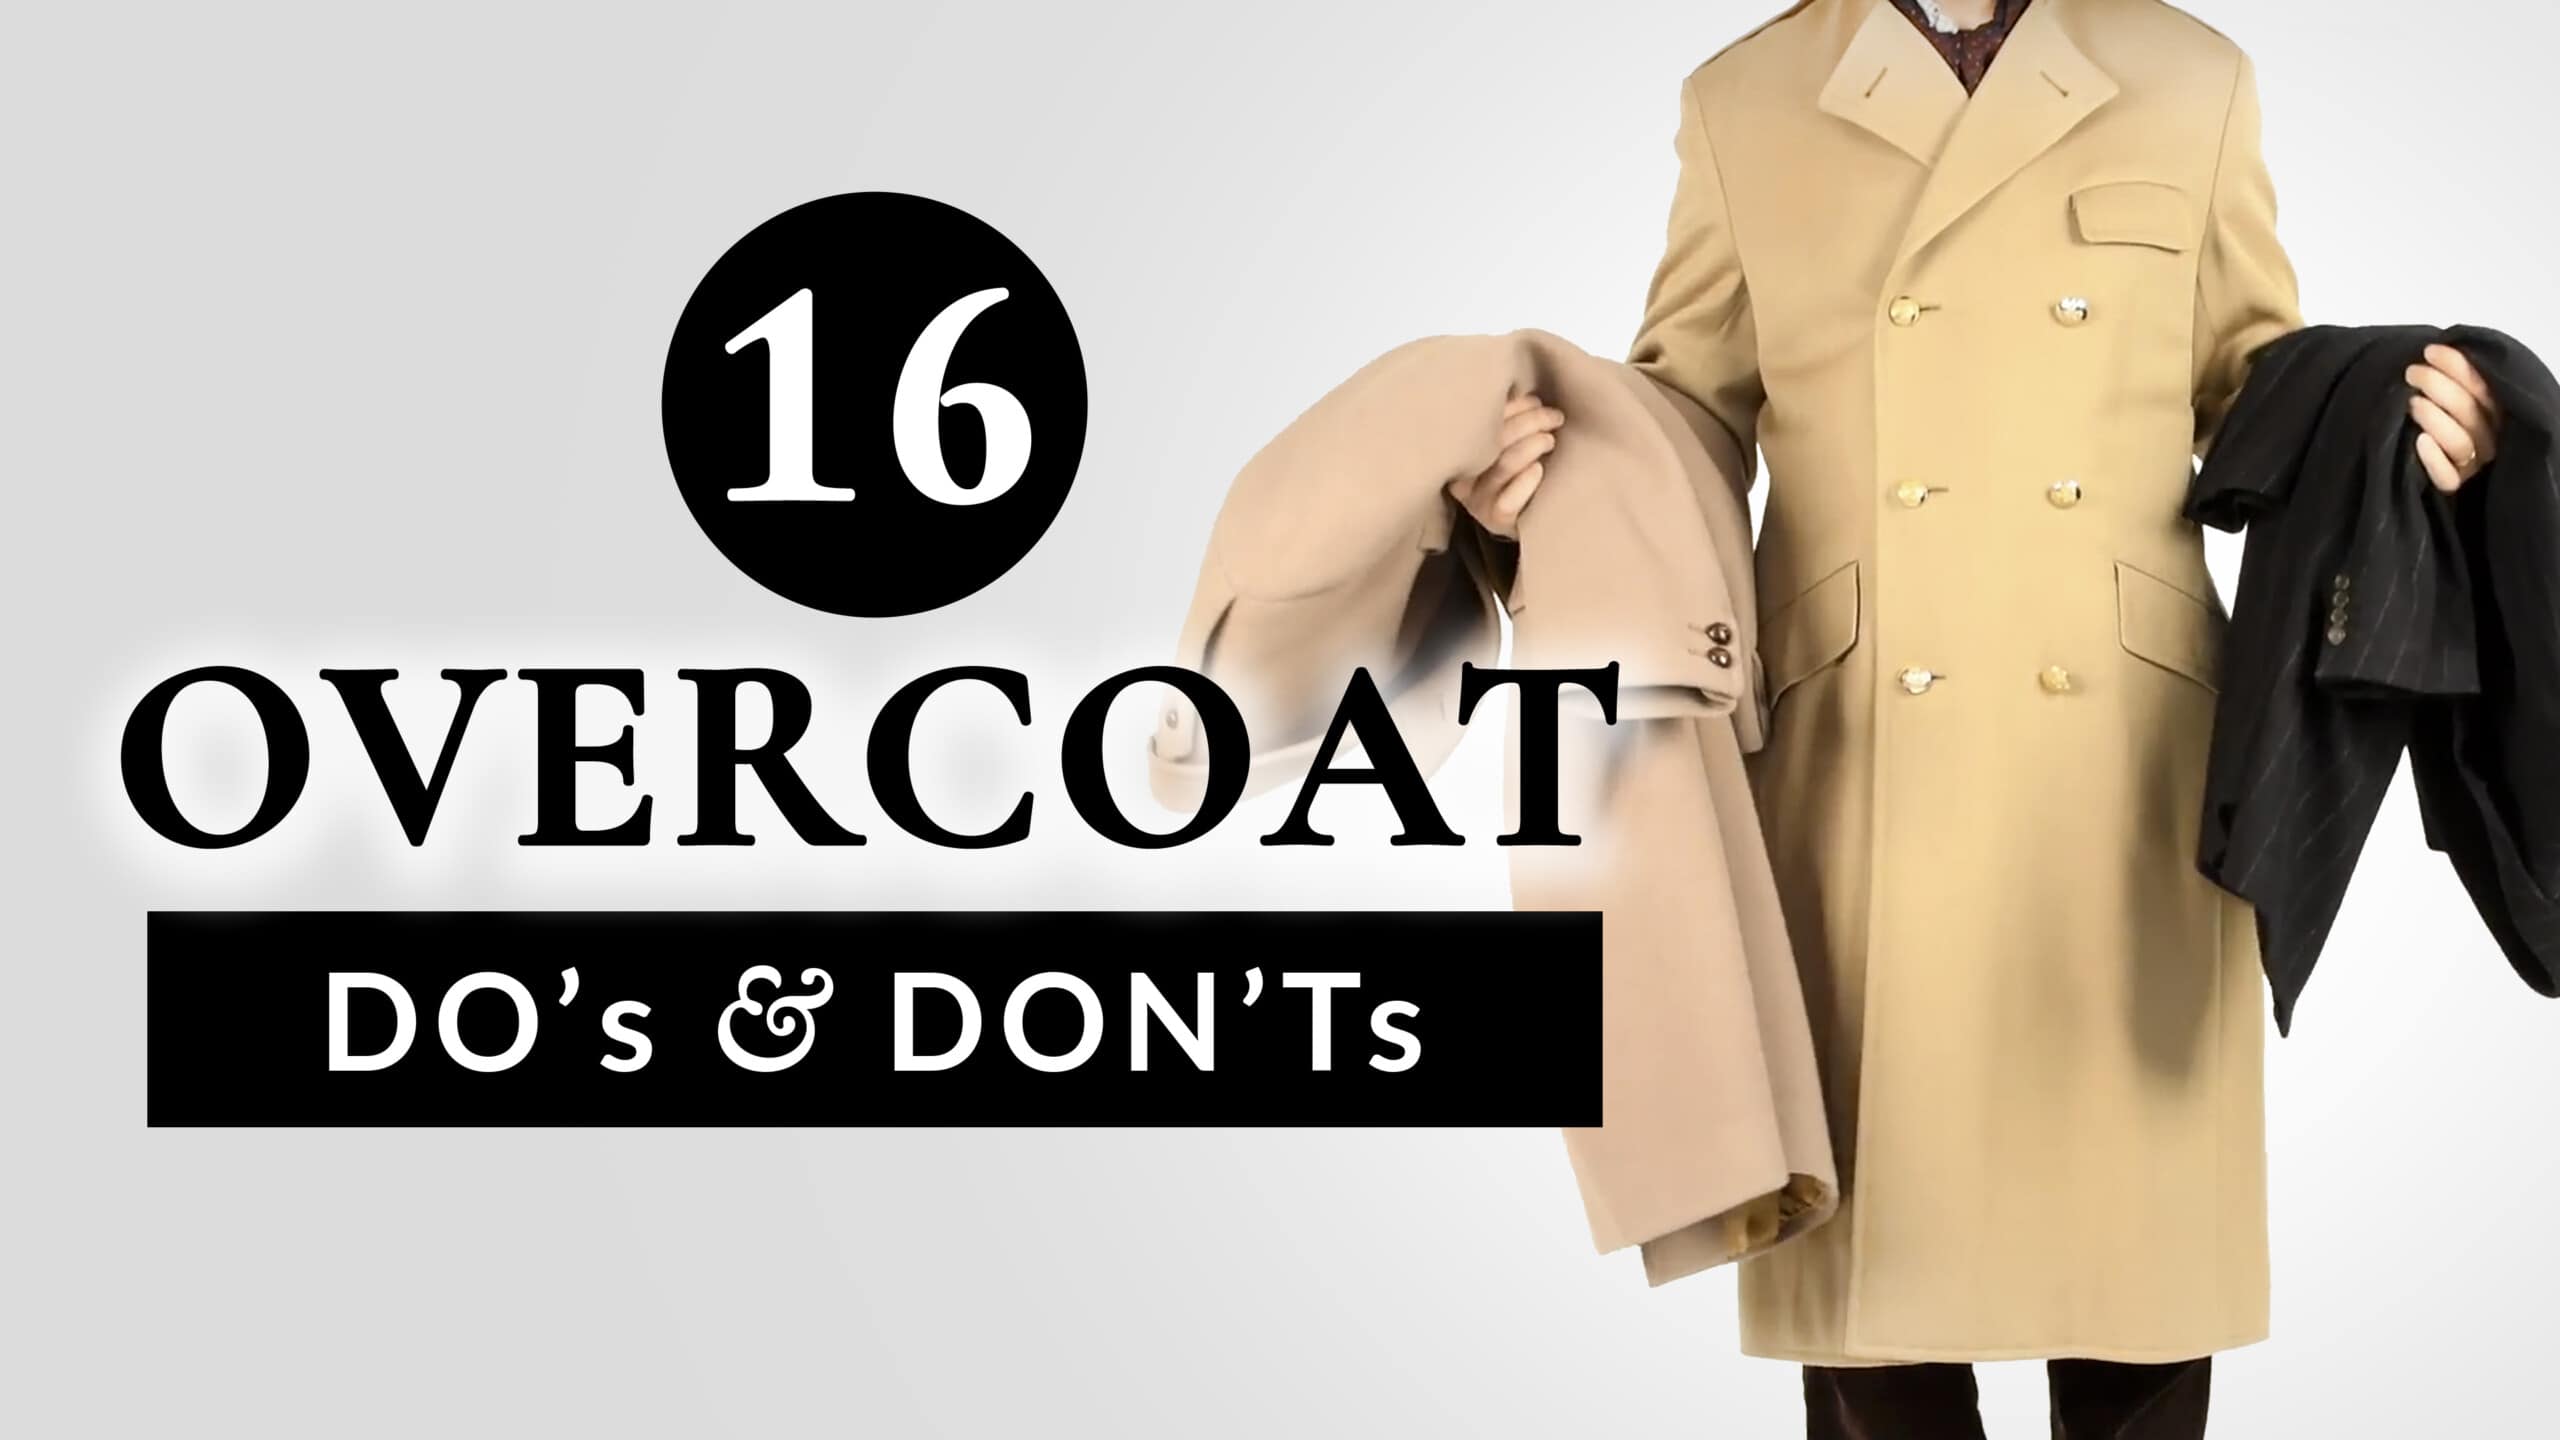 16 Overcoat DO's & DON'Ts